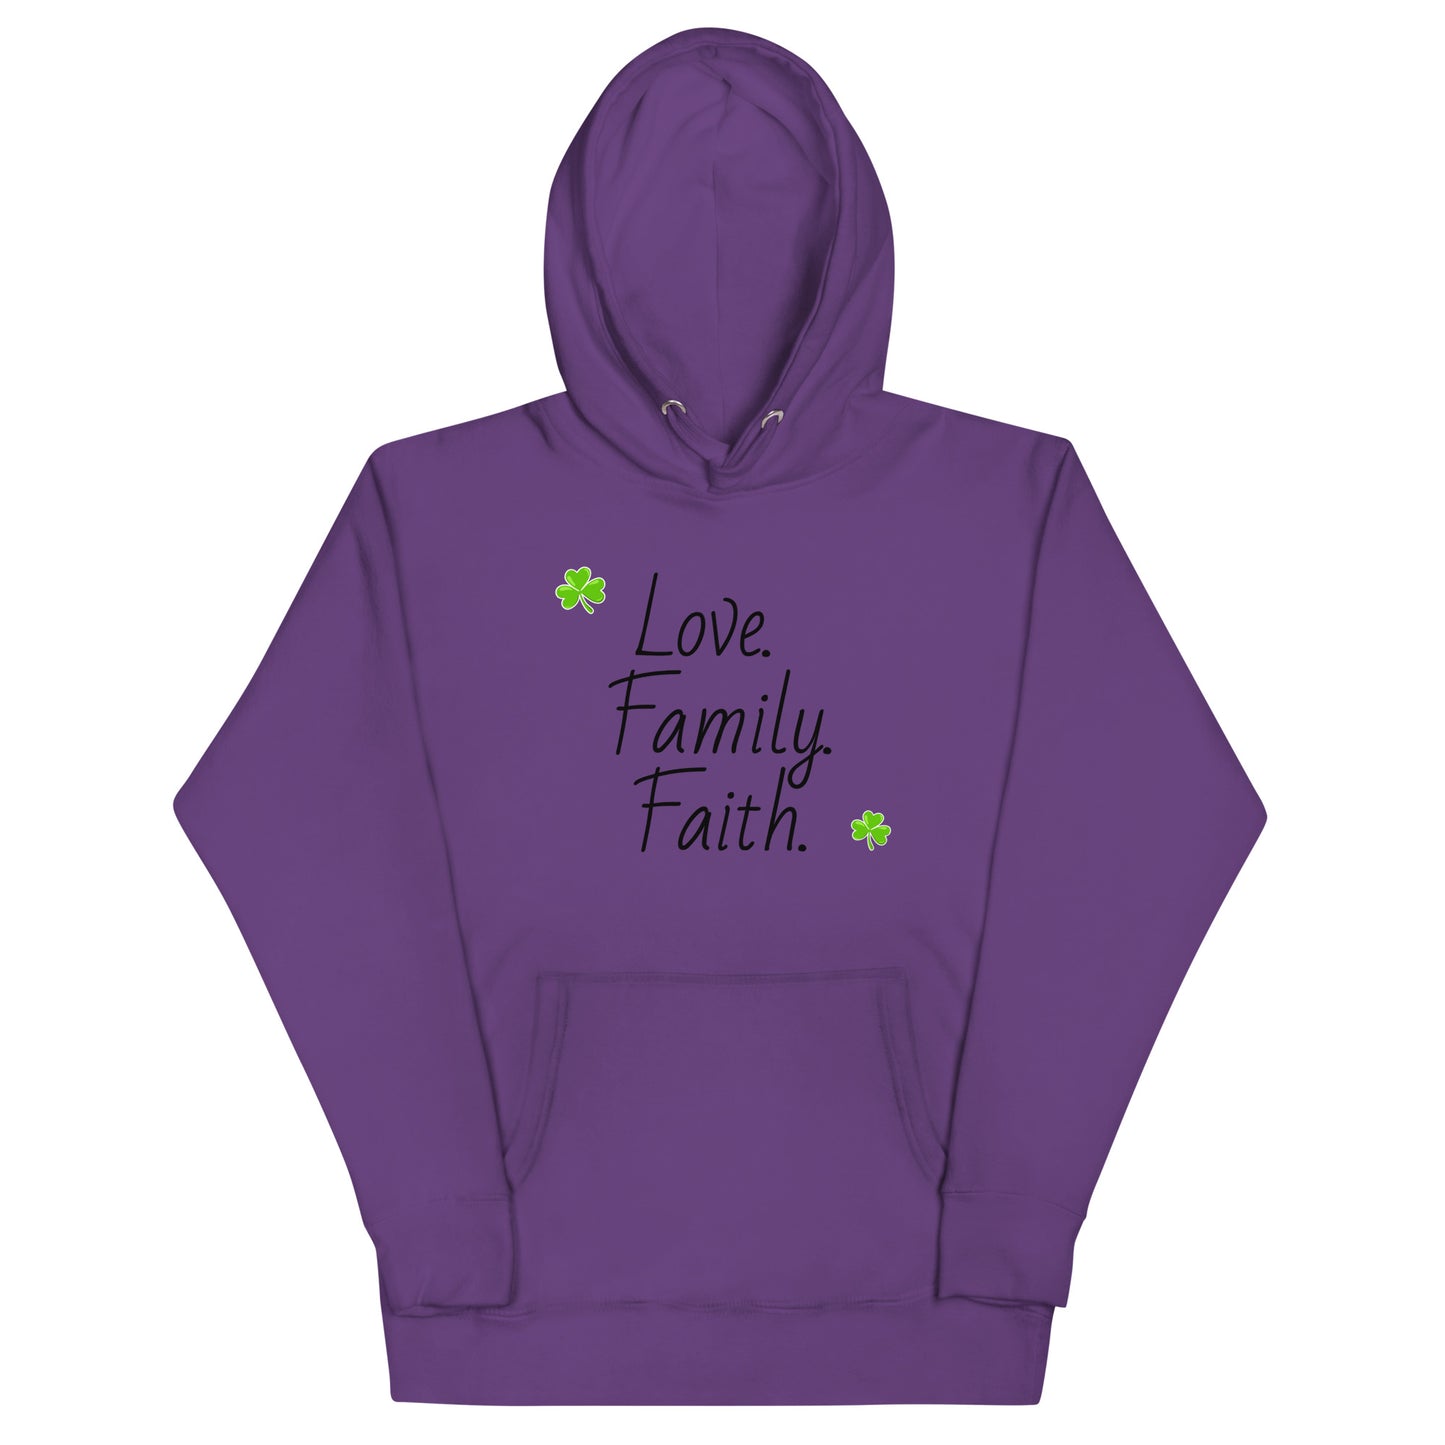 Love, Family, Faith - Unisex Hoodie (black lettering)